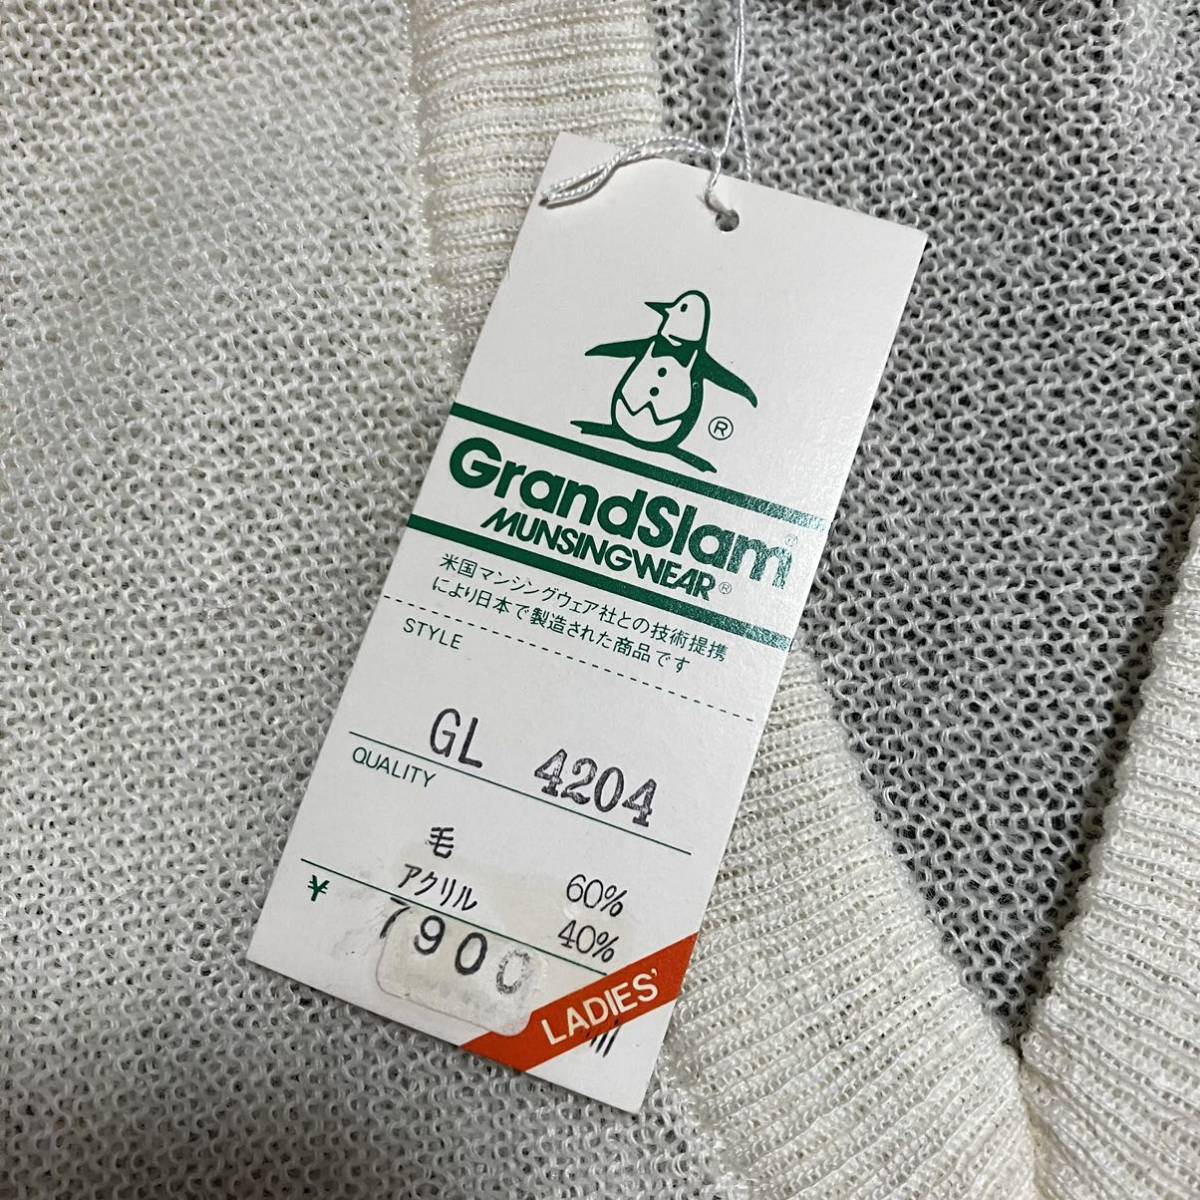 マンシングウェア GL4204 Sサイズ 長袖 セーター ニット ゴルフ 日本正規品 当時物 ヴィンテージ 新品、未使用の画像2